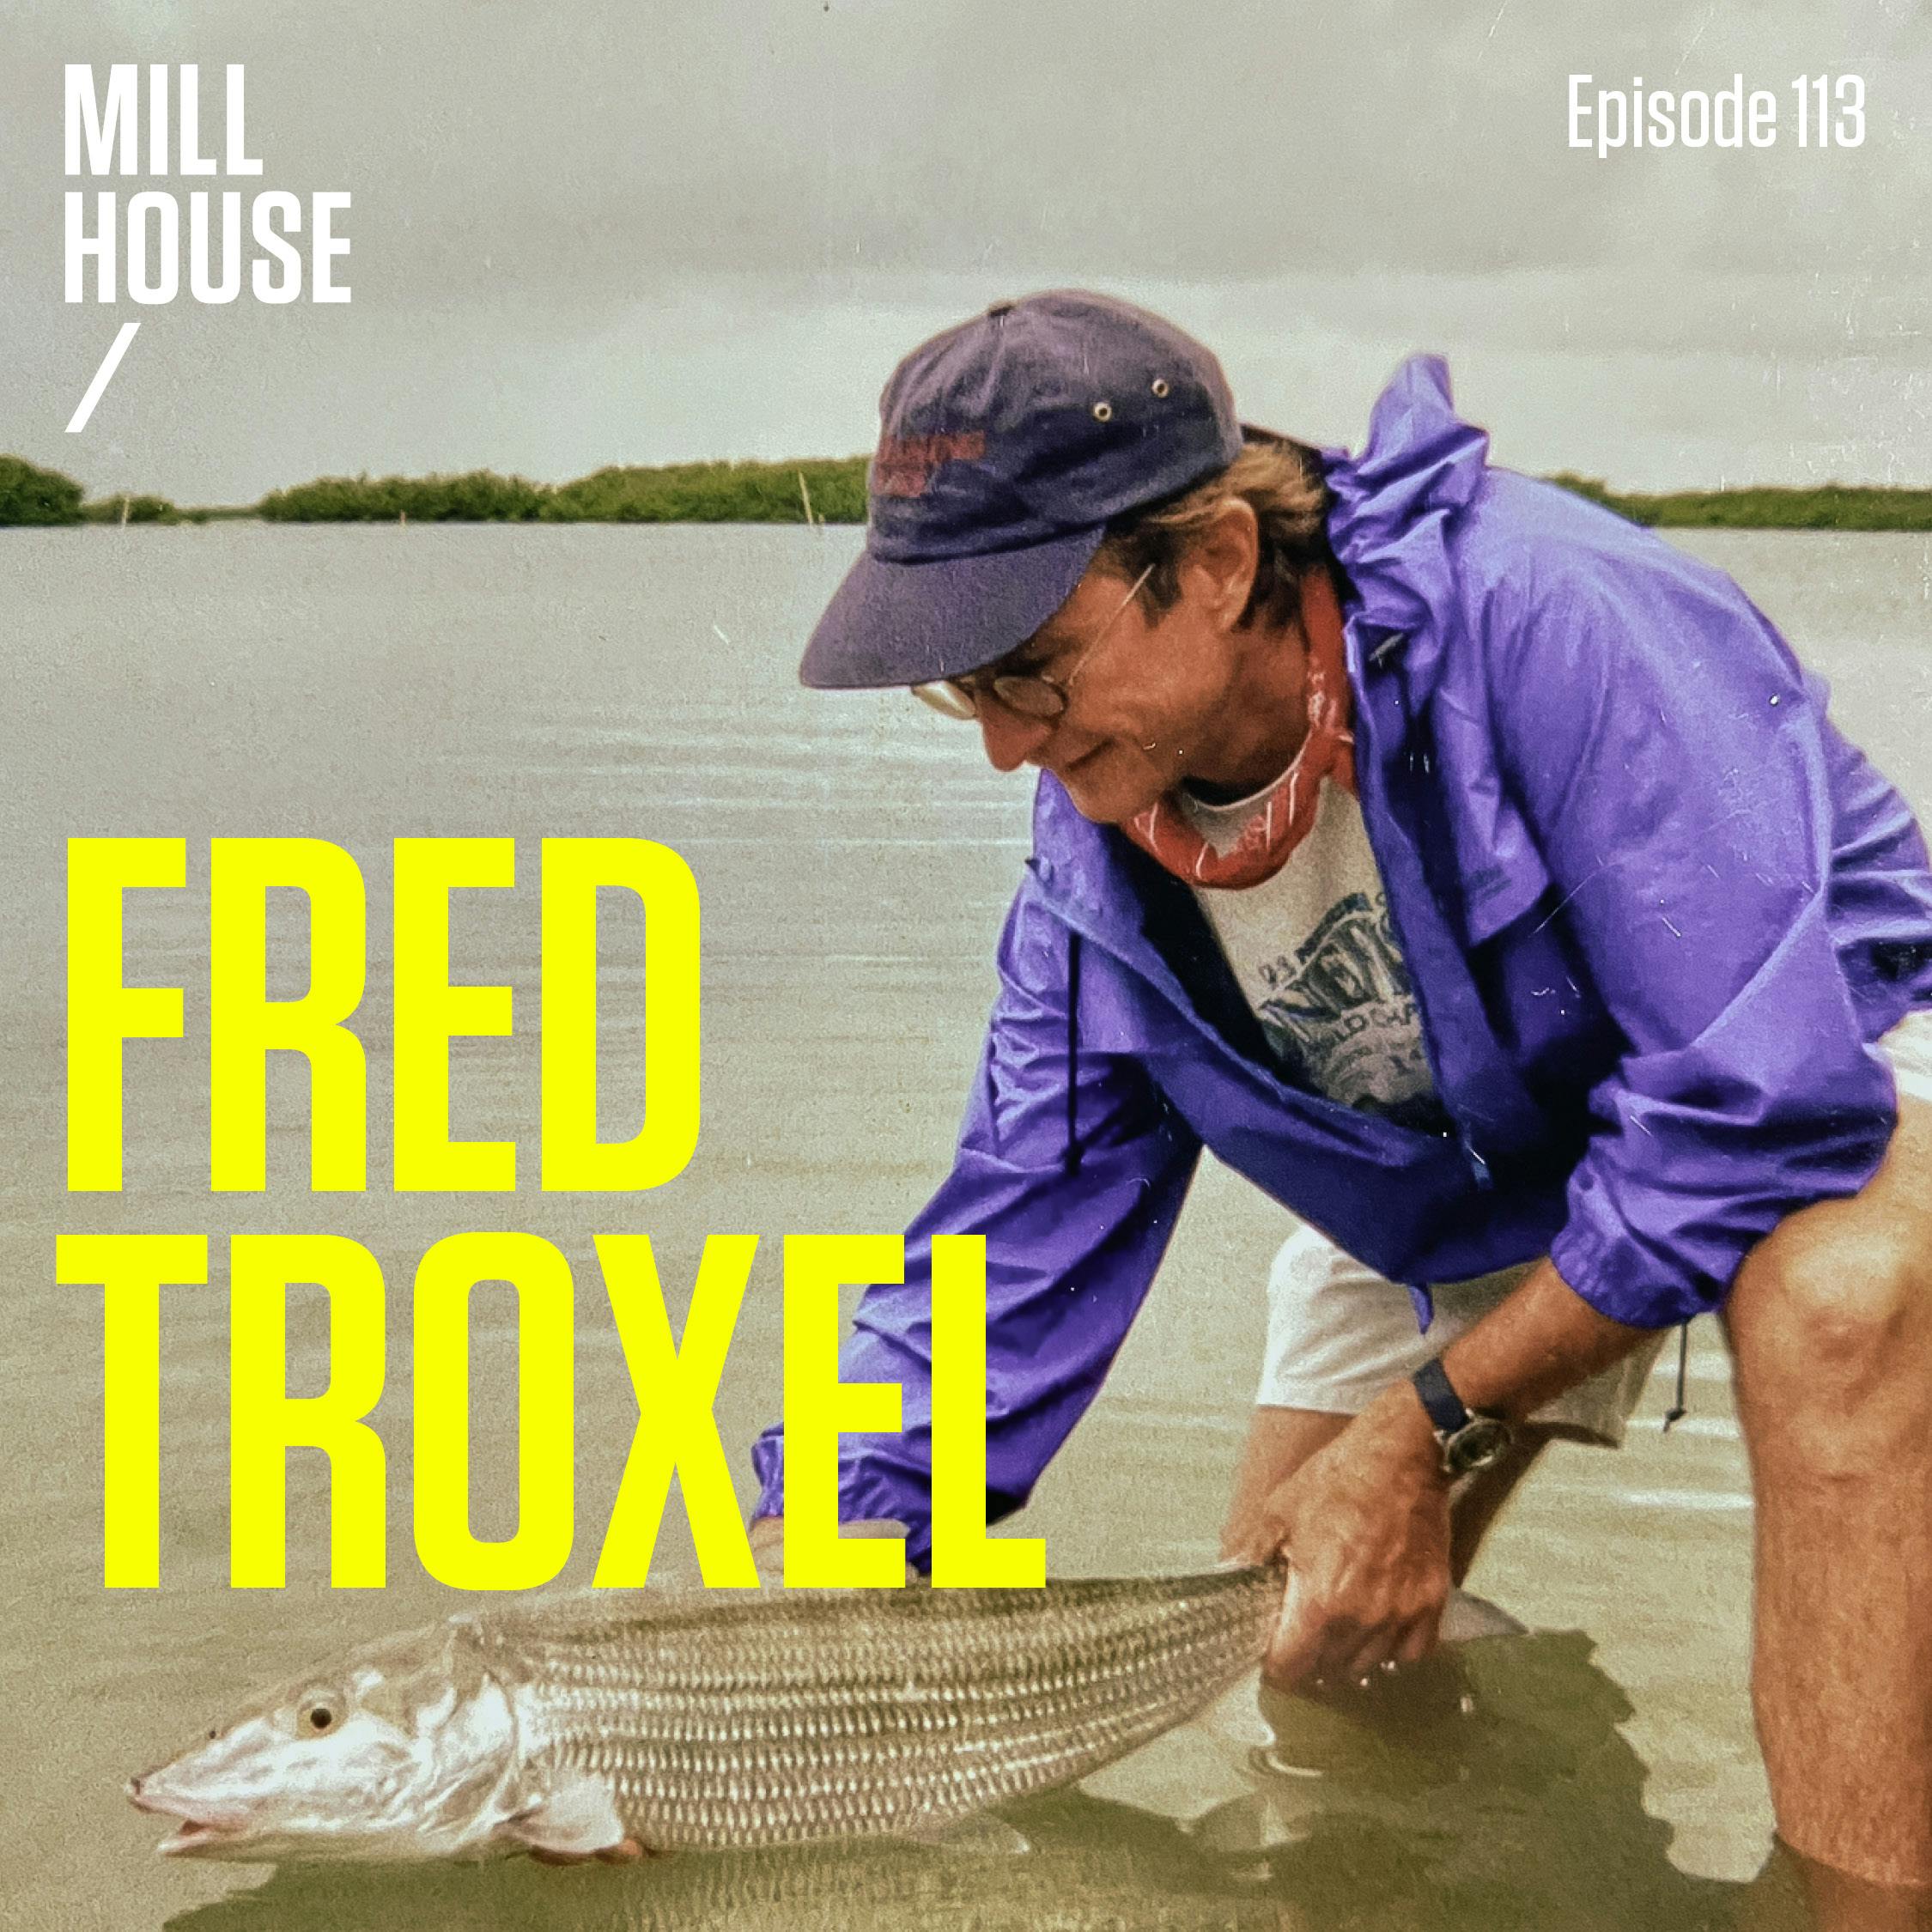 Episode 113: Dr. Fred Troxel - Dentist, Artist, & Fanatic Fisherman